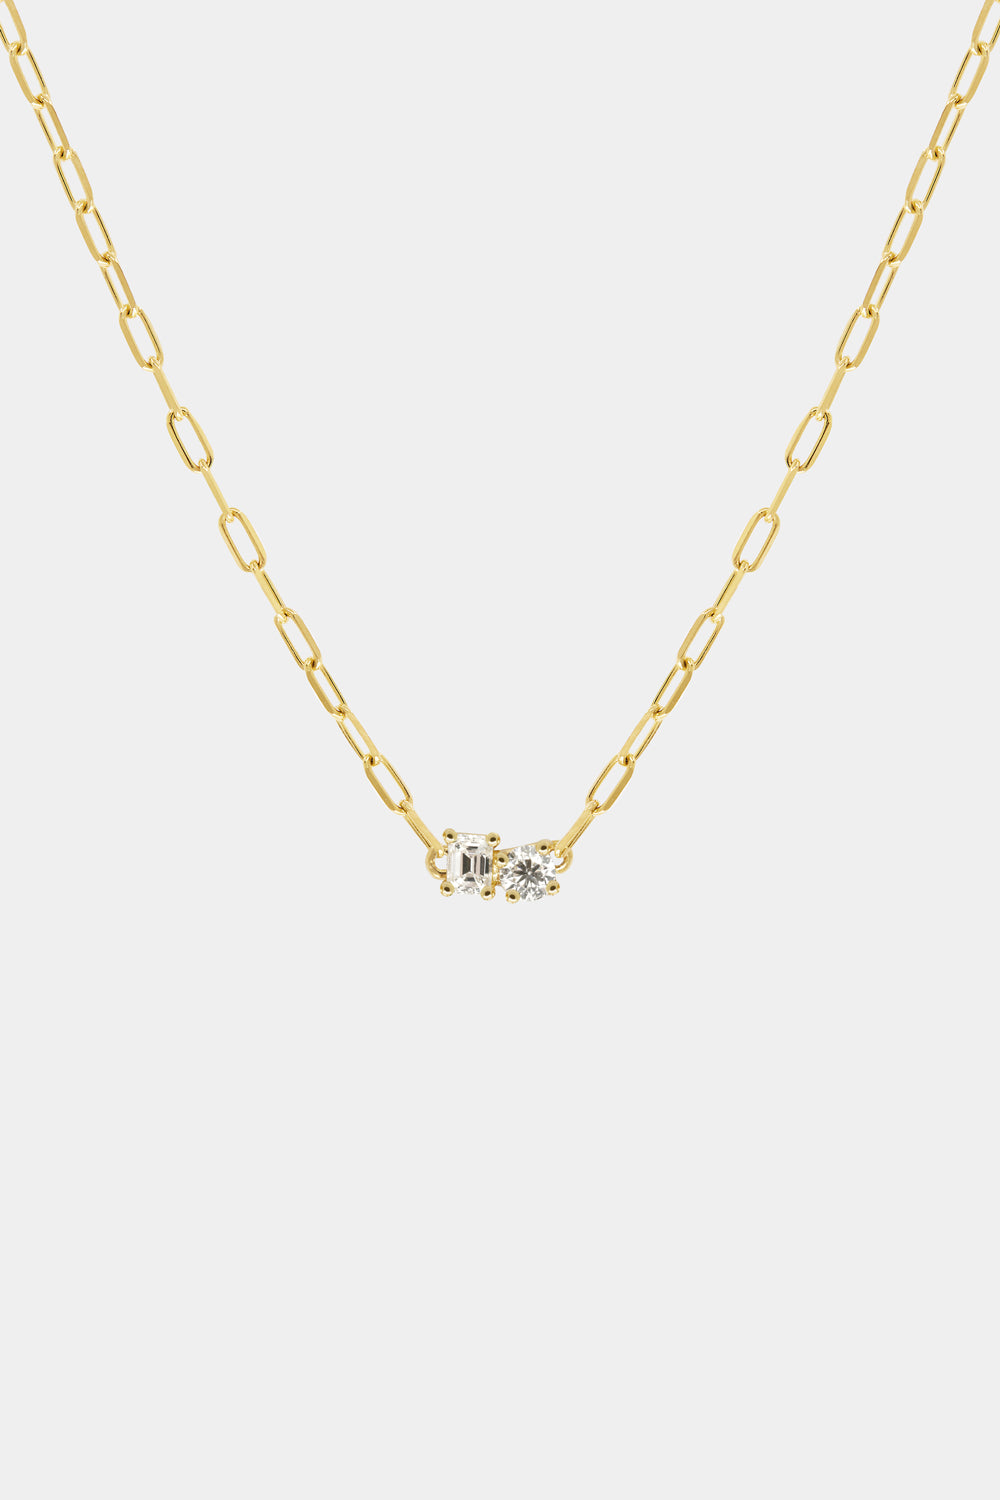 Emerald and Round Diamond Toi Et Moi Necklace | 18K Yellow Gold| Natasha Schweitzer